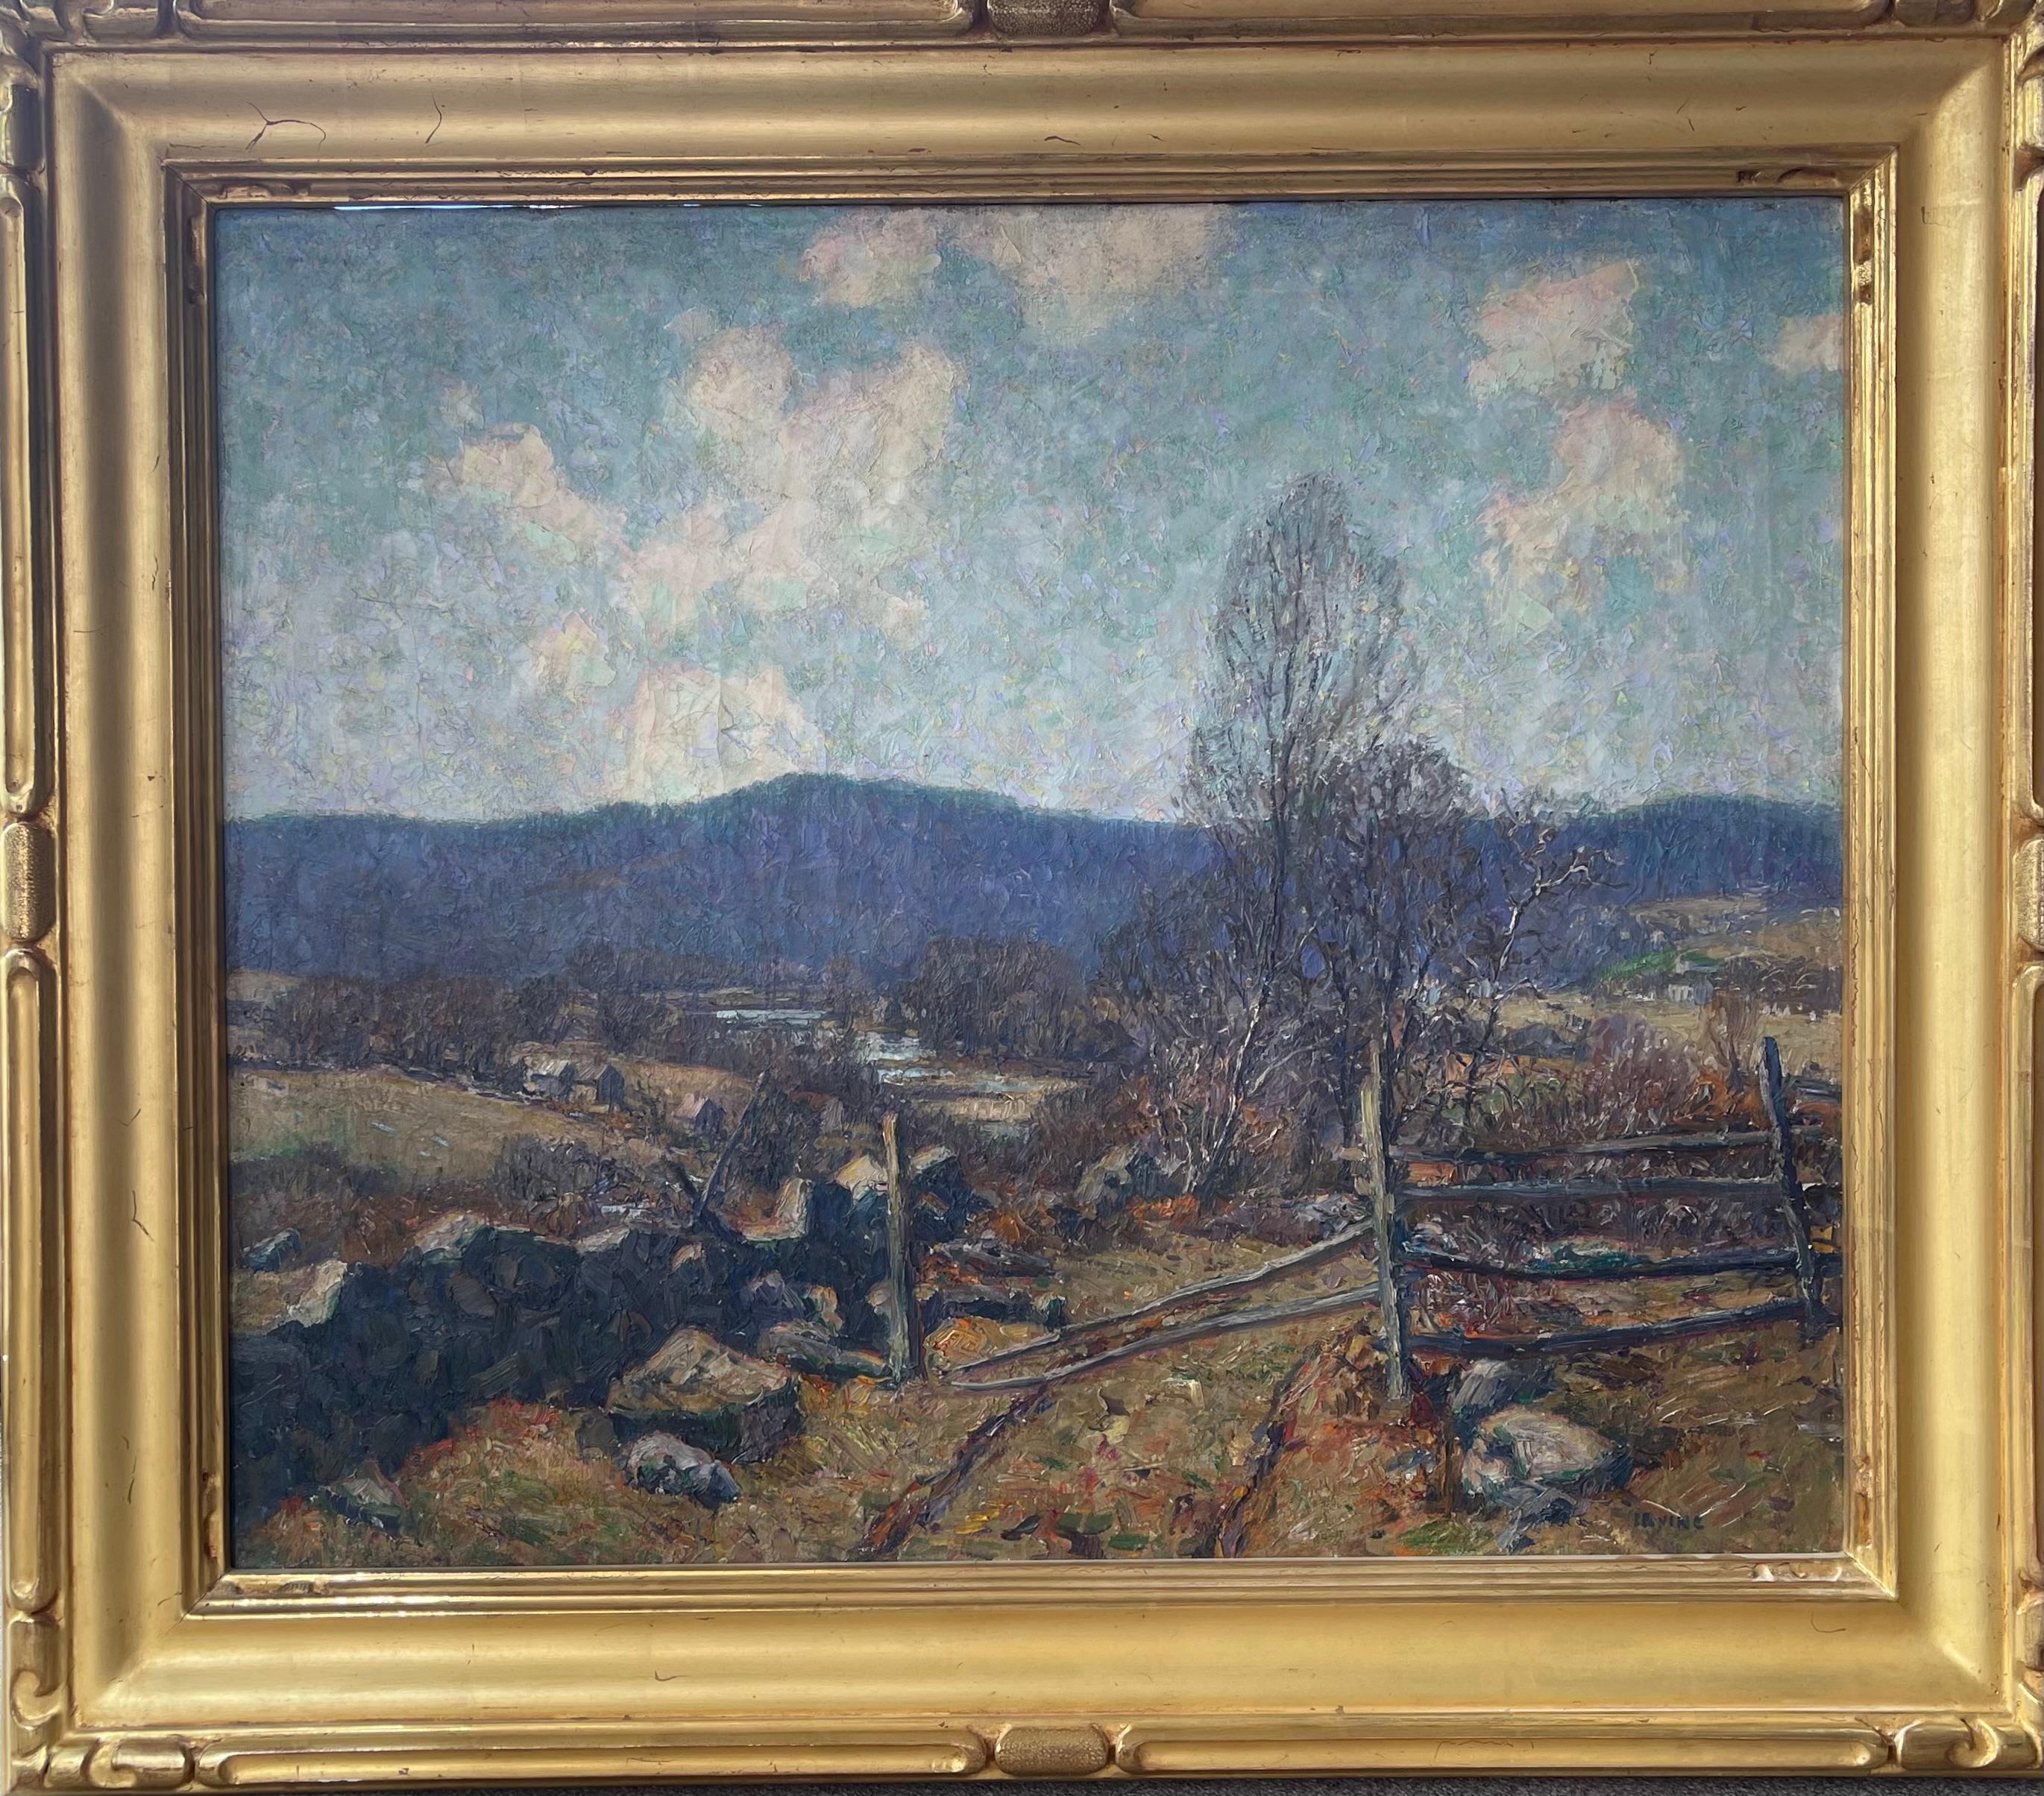  Autumn Field, Ölgemälde des amerikanischen Impressionisten Wilson Irvine 1869-1936 – Painting von Wilson Henry Irvine